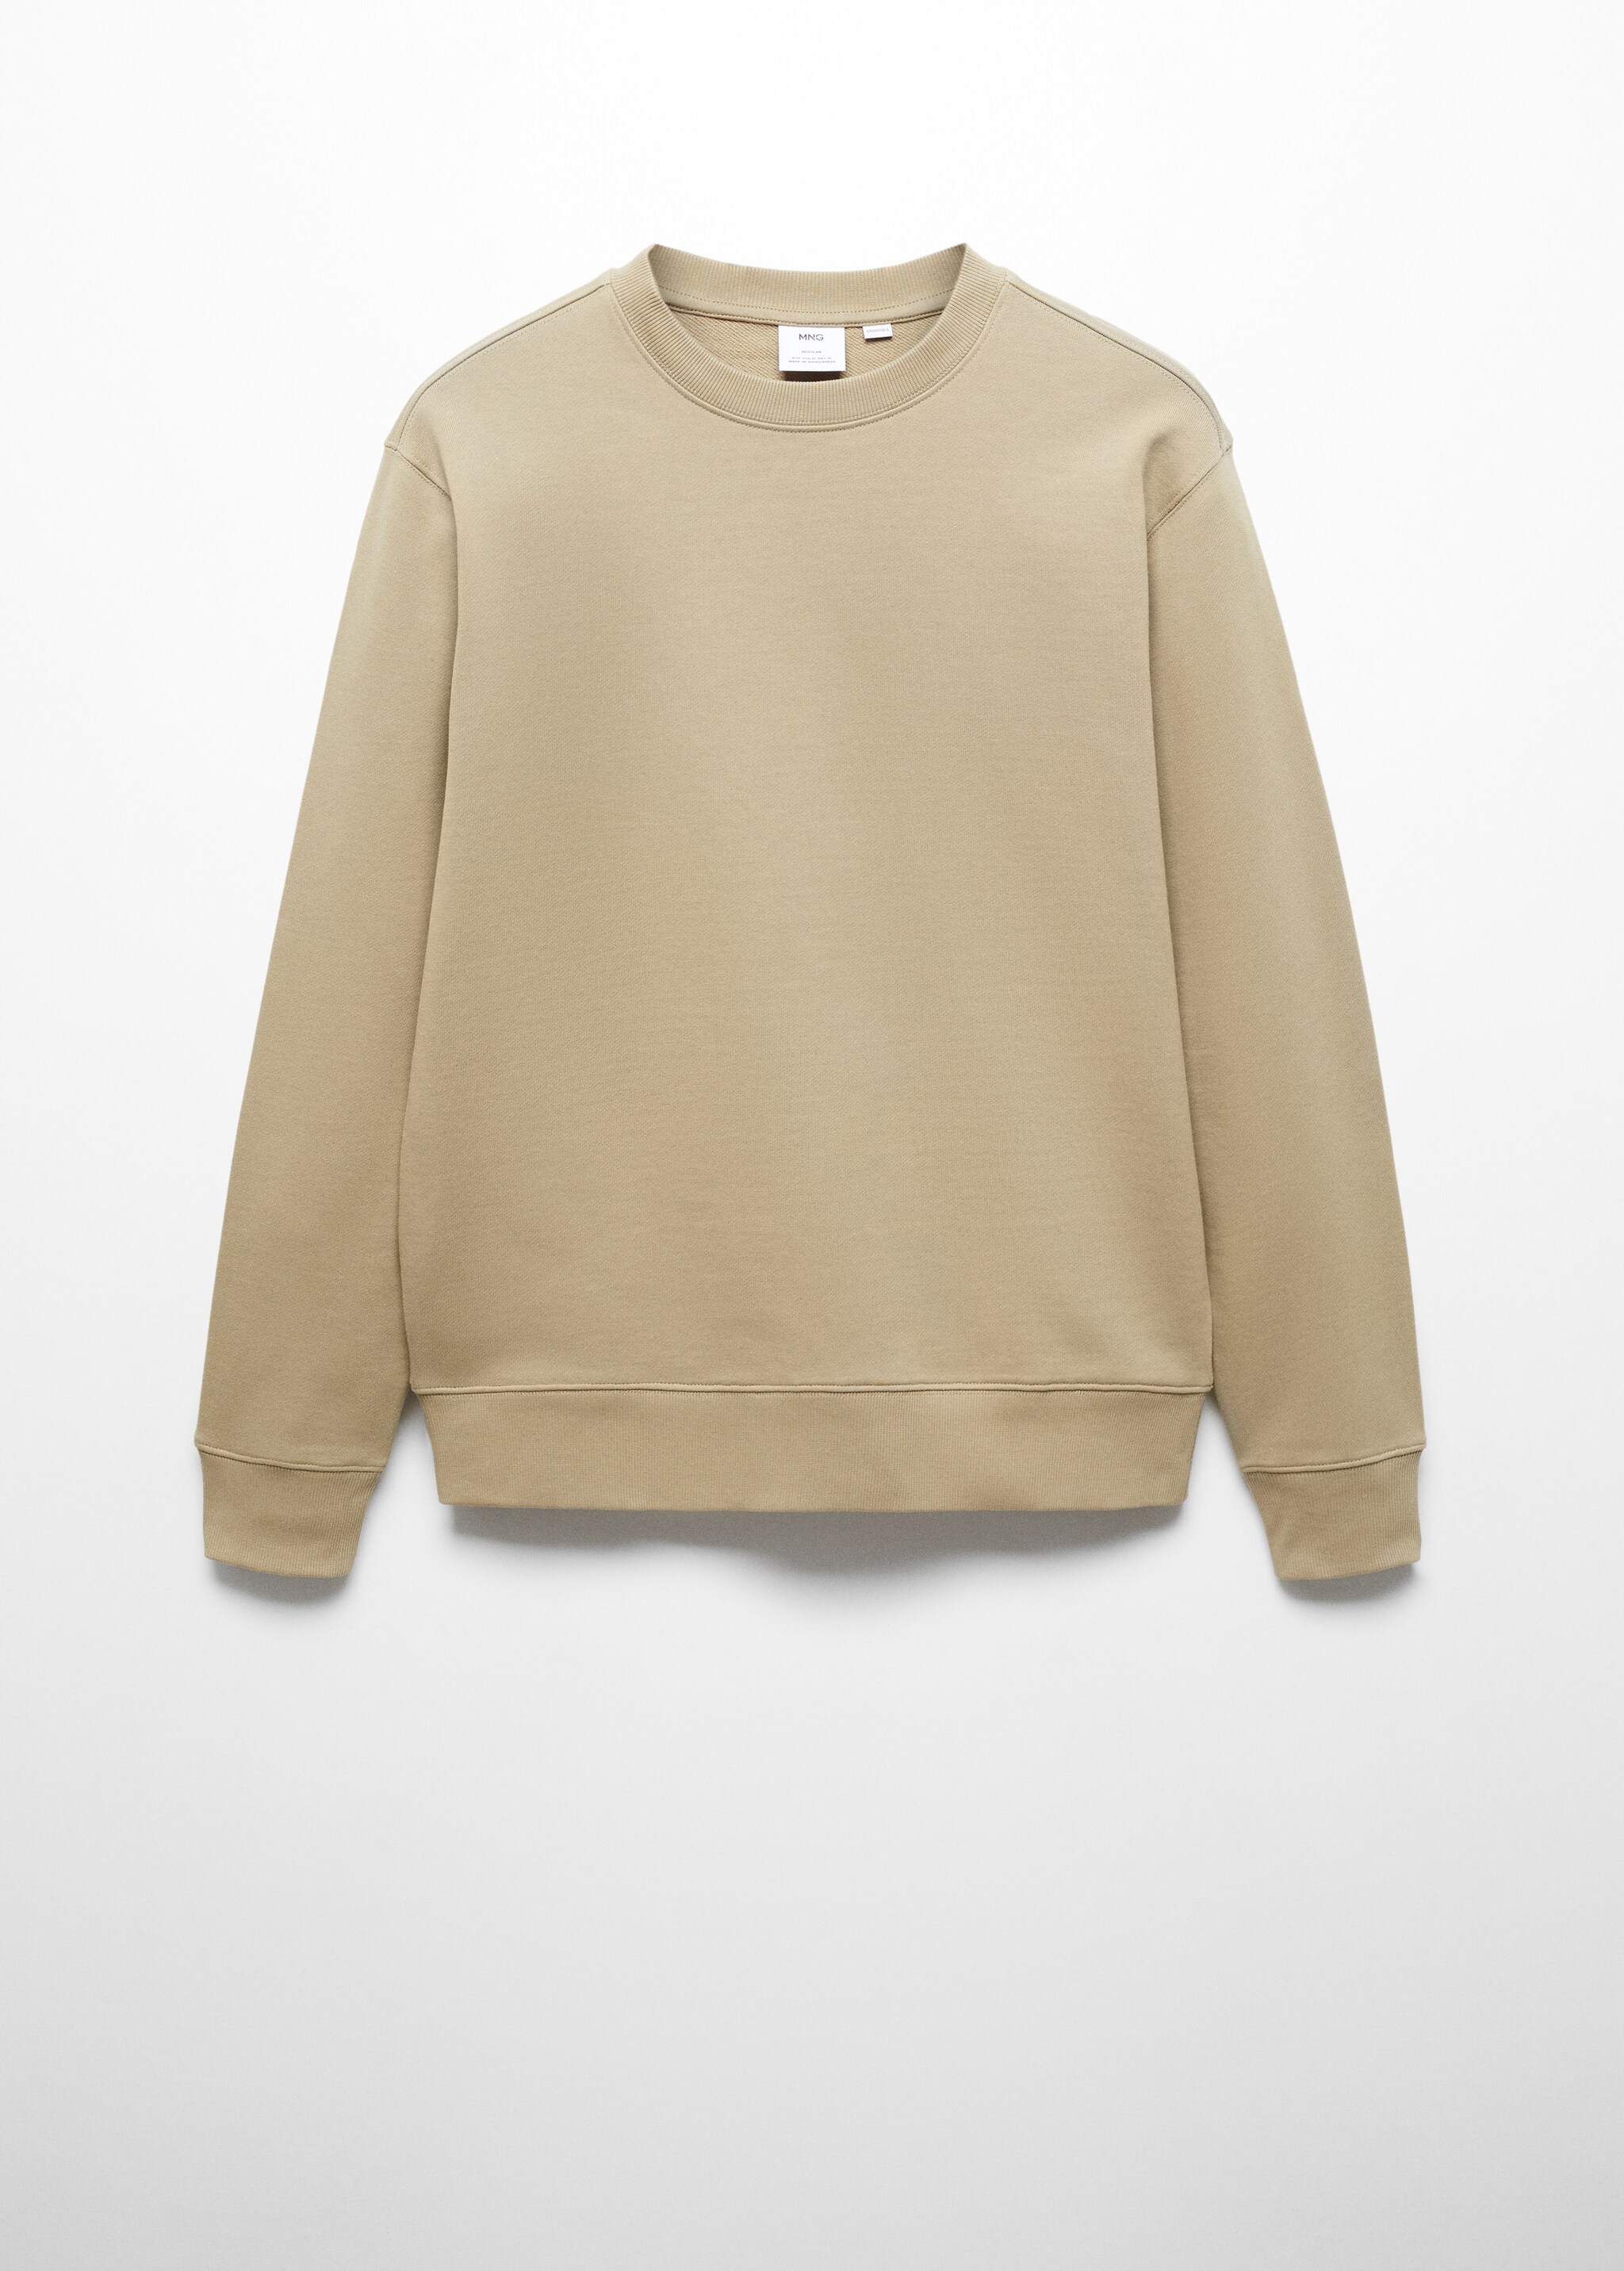 Sweatshirt básica de 100% algodão - Artigo sem modelo